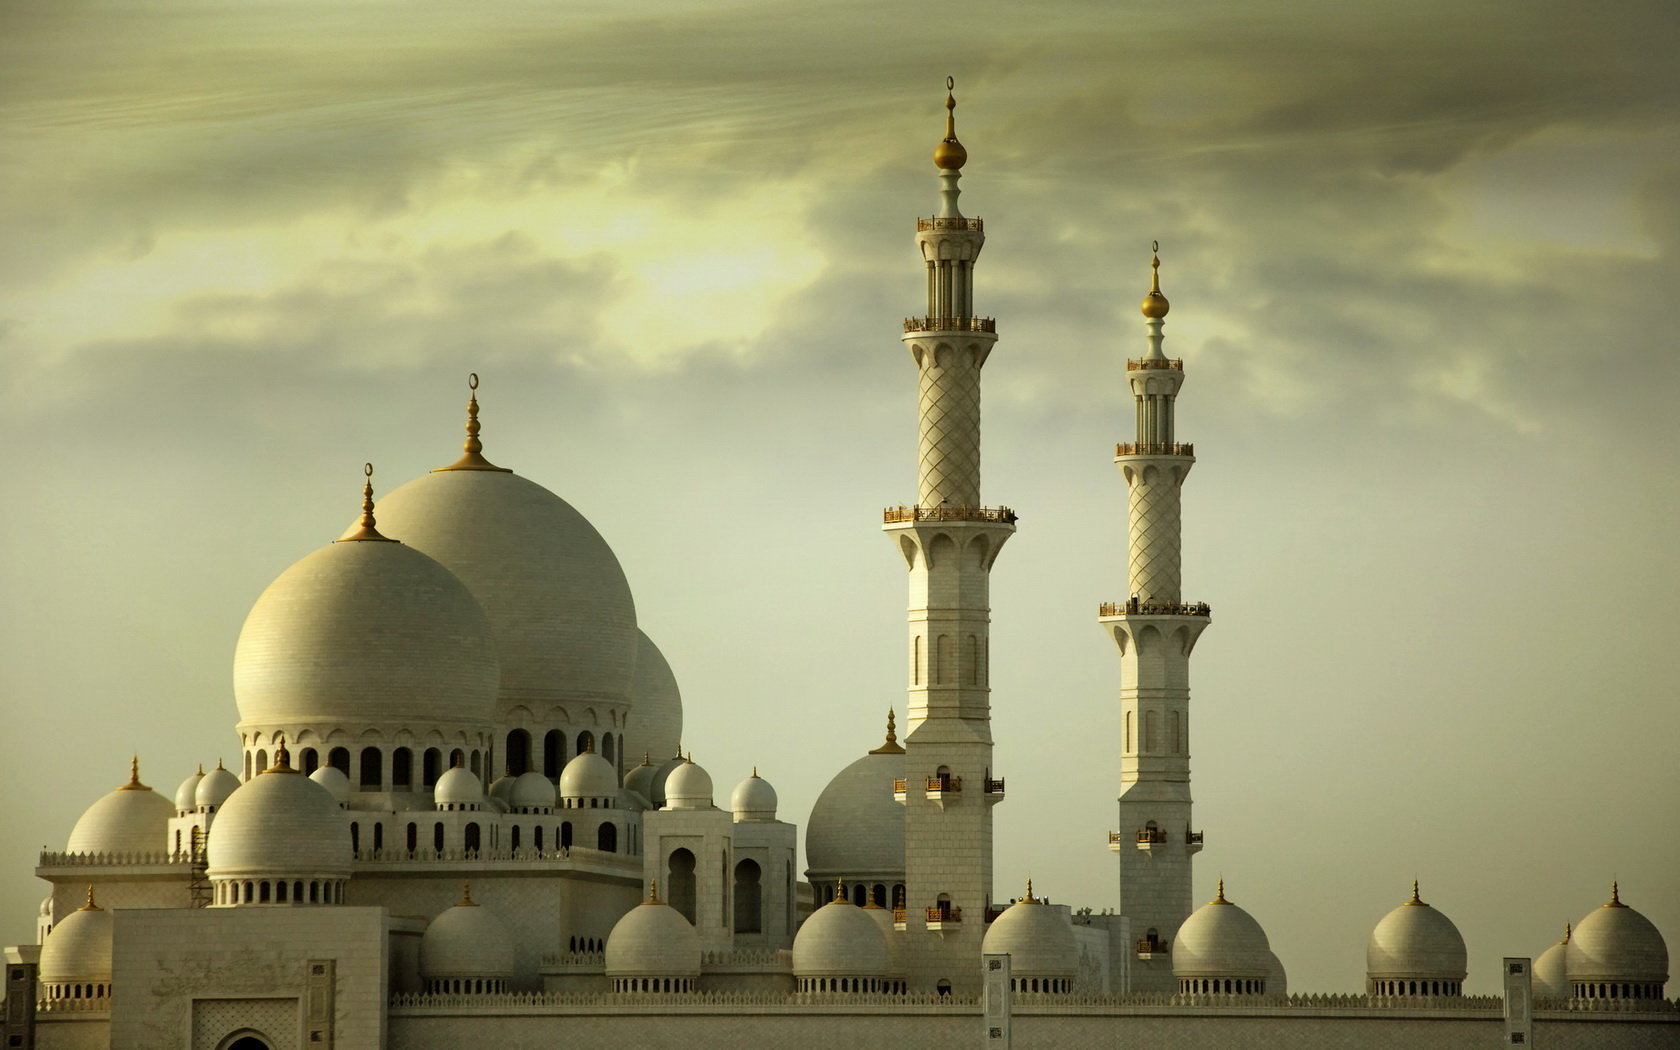 Best Sheikh Zayed Grand Mosque wallpaper ID:277836 for High Resolution hd 1680x1050 desktop